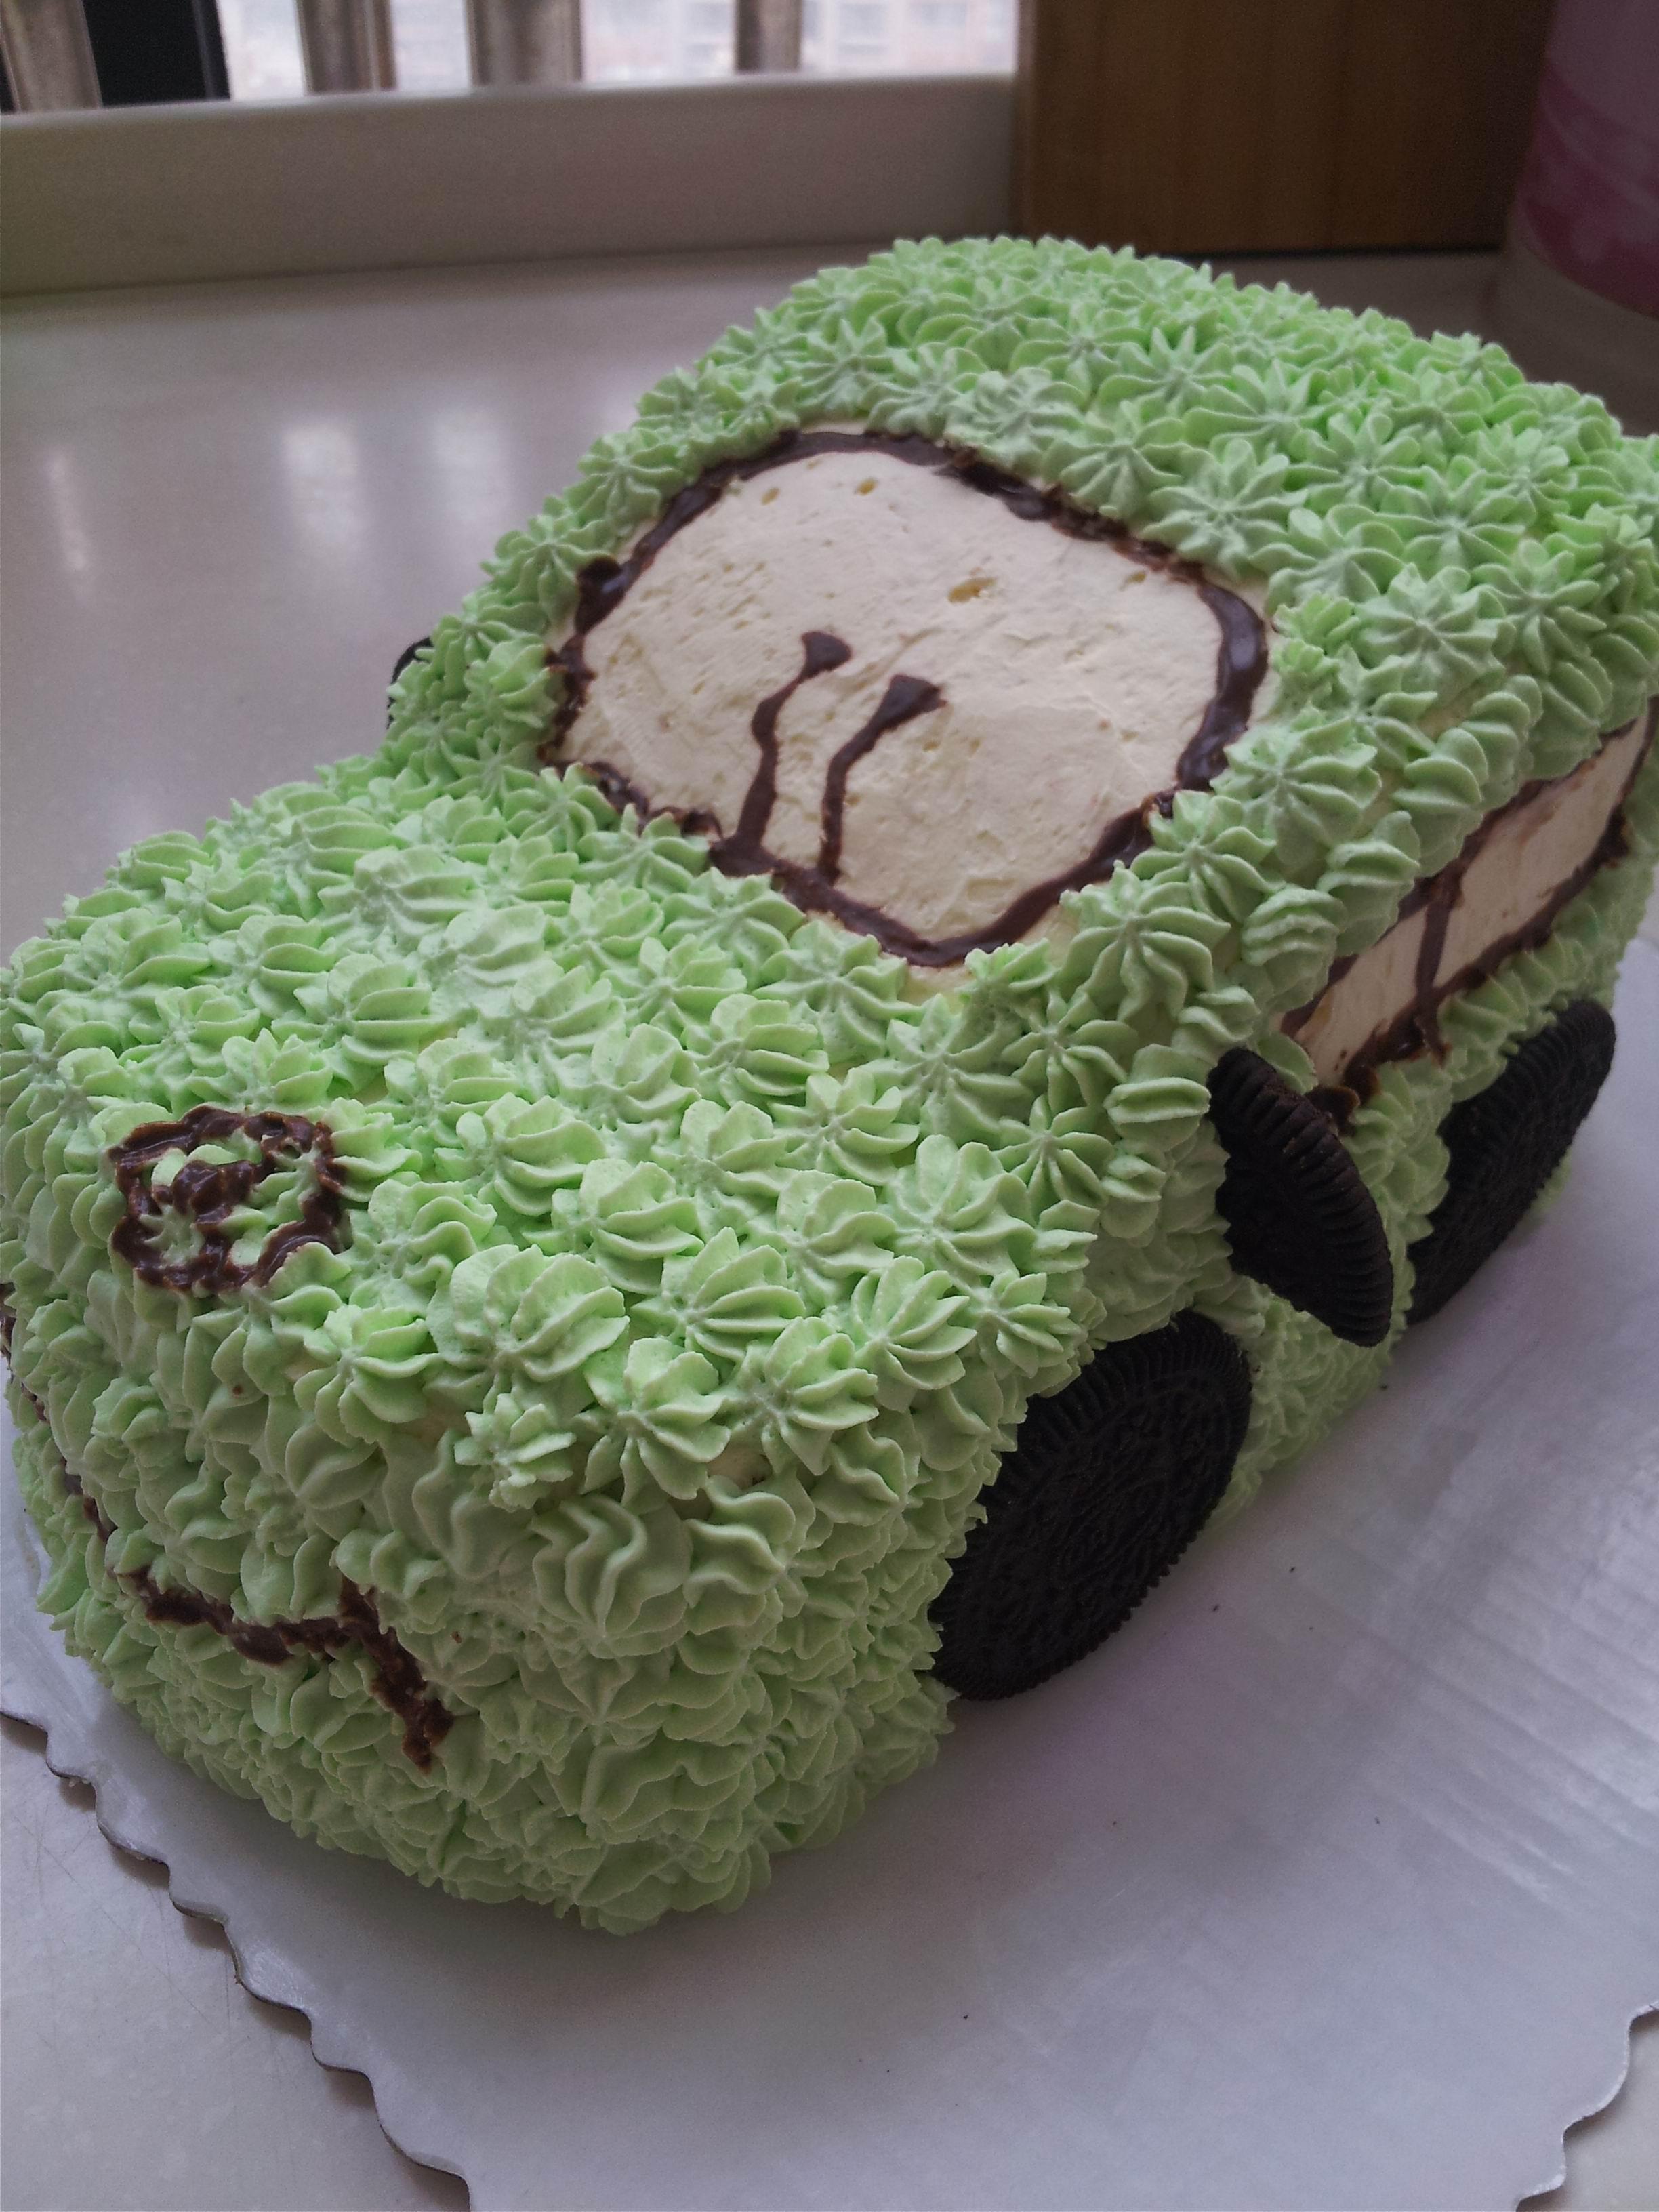 汽车蛋糕的做法